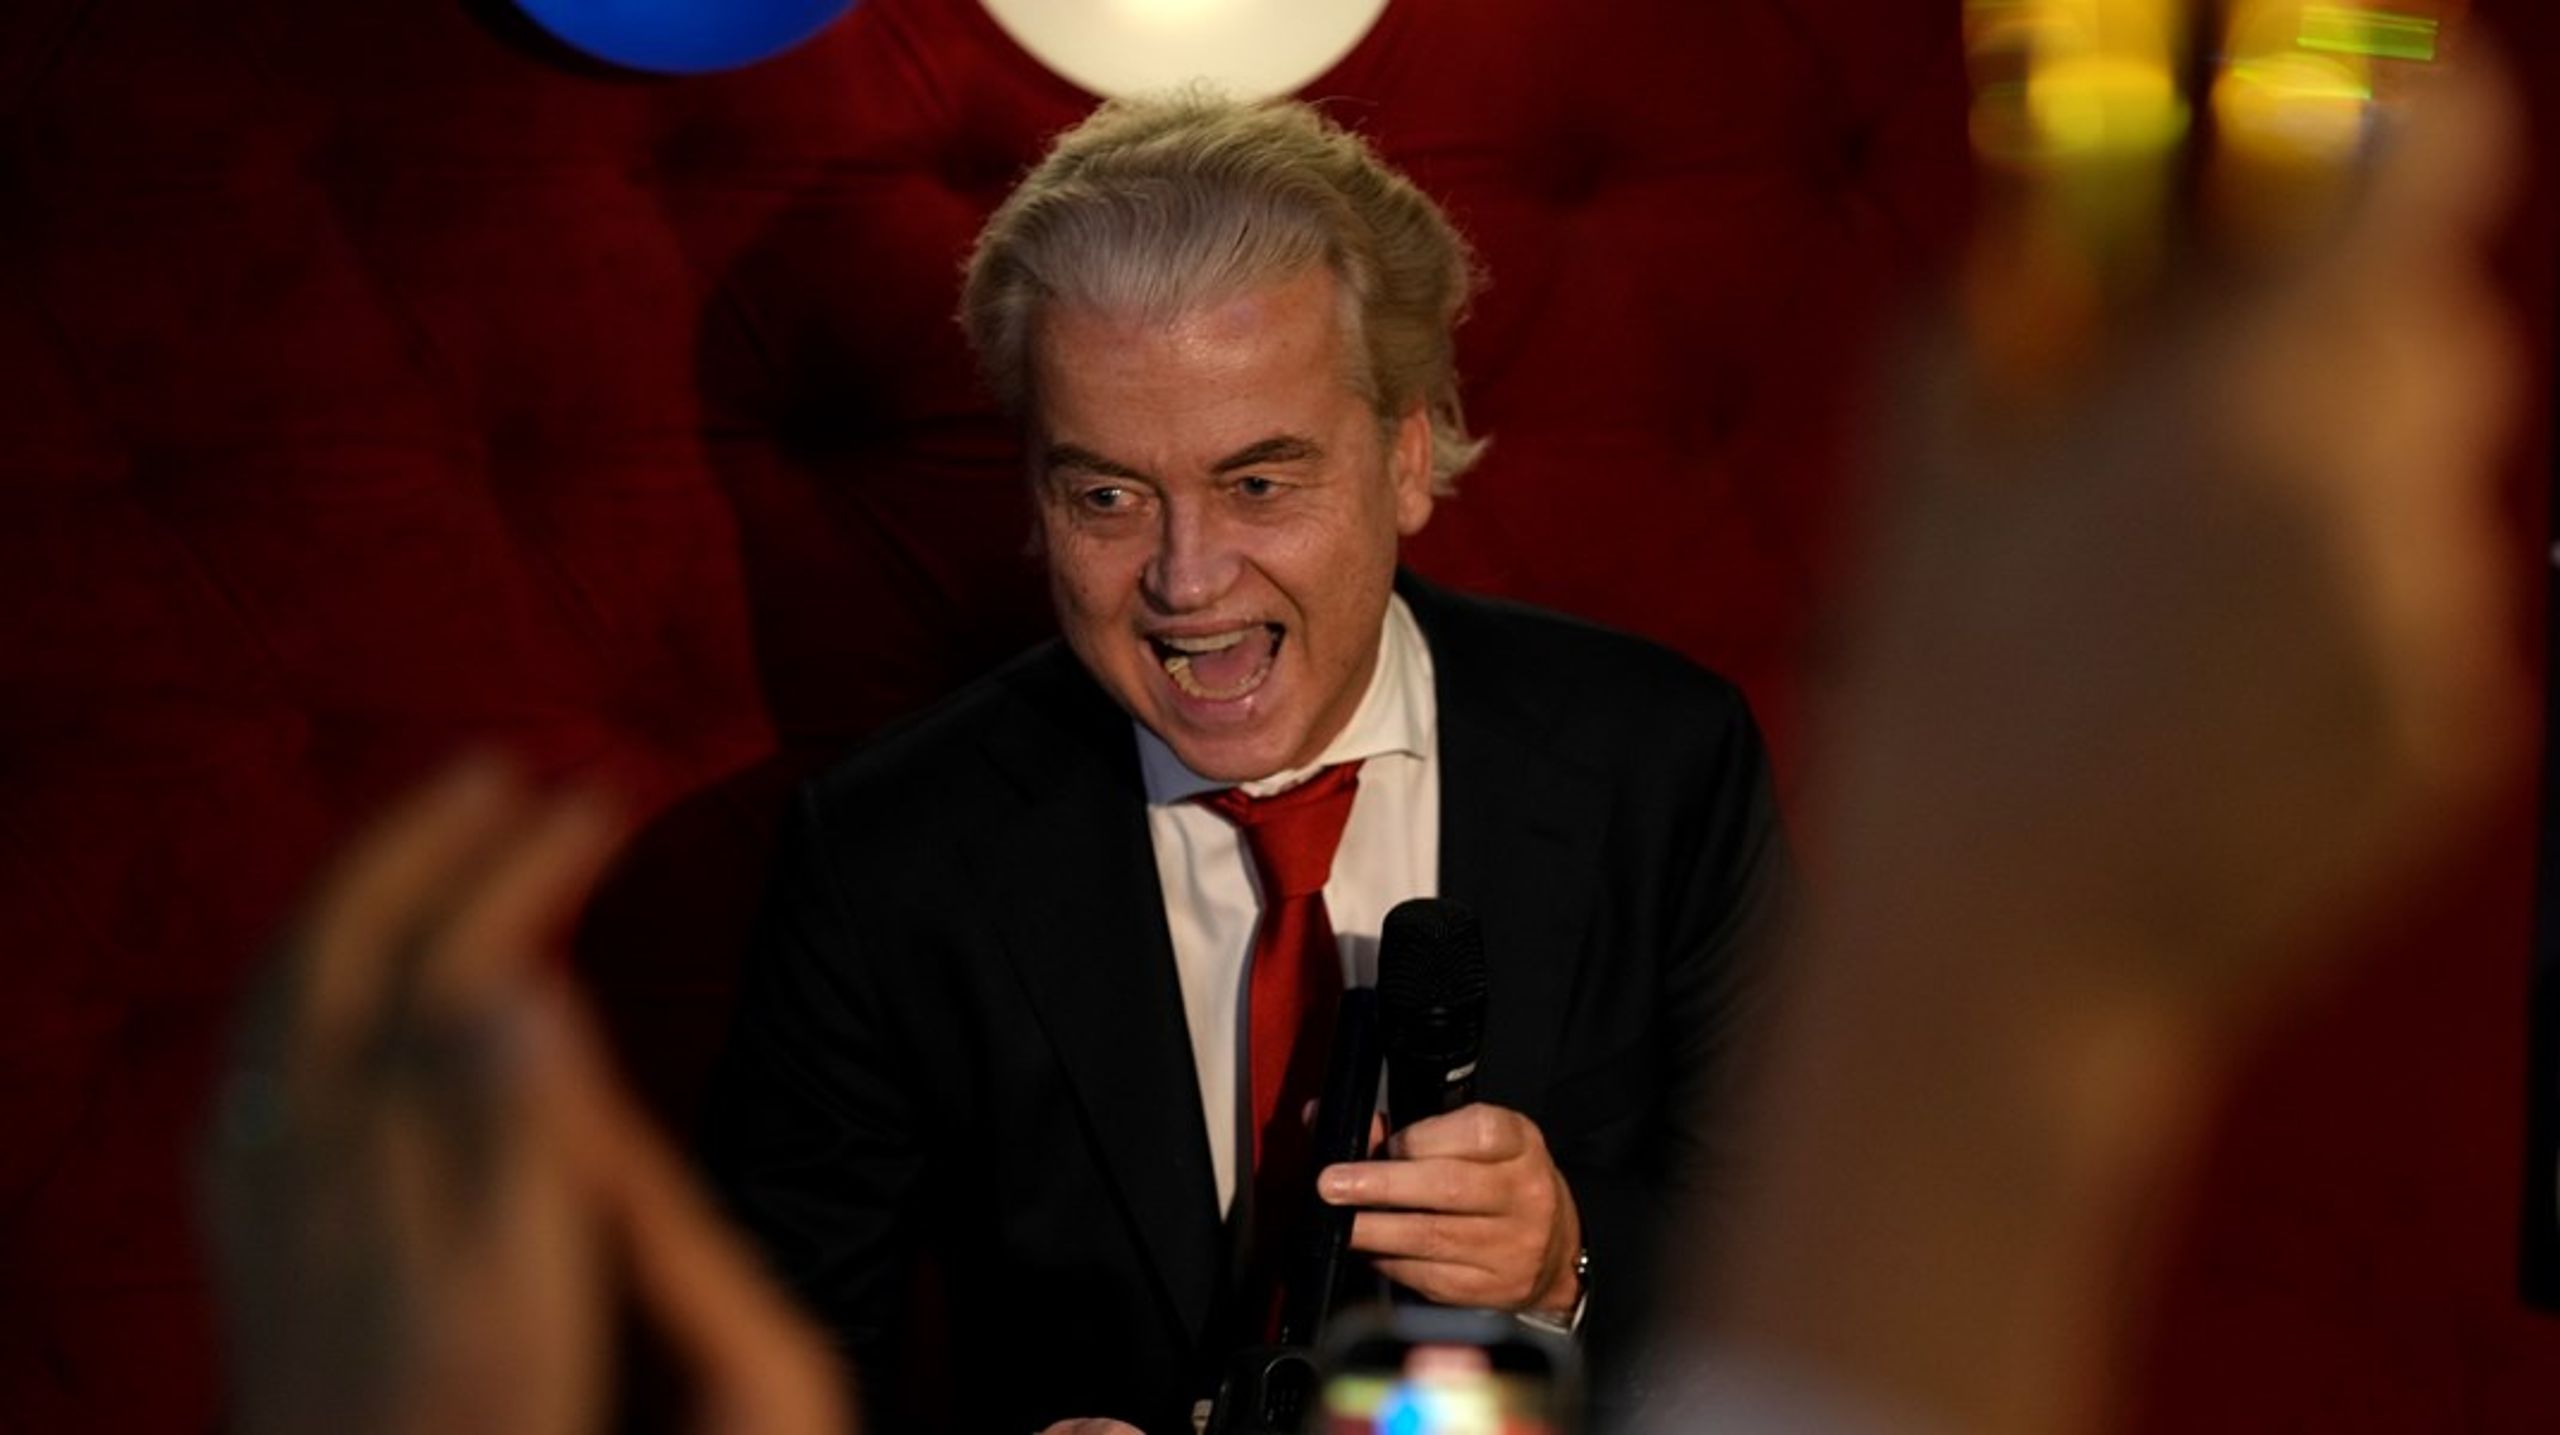 Geert Wilders parti PVV är störst i Nederländerna. Det står klart efter onsdagens val.